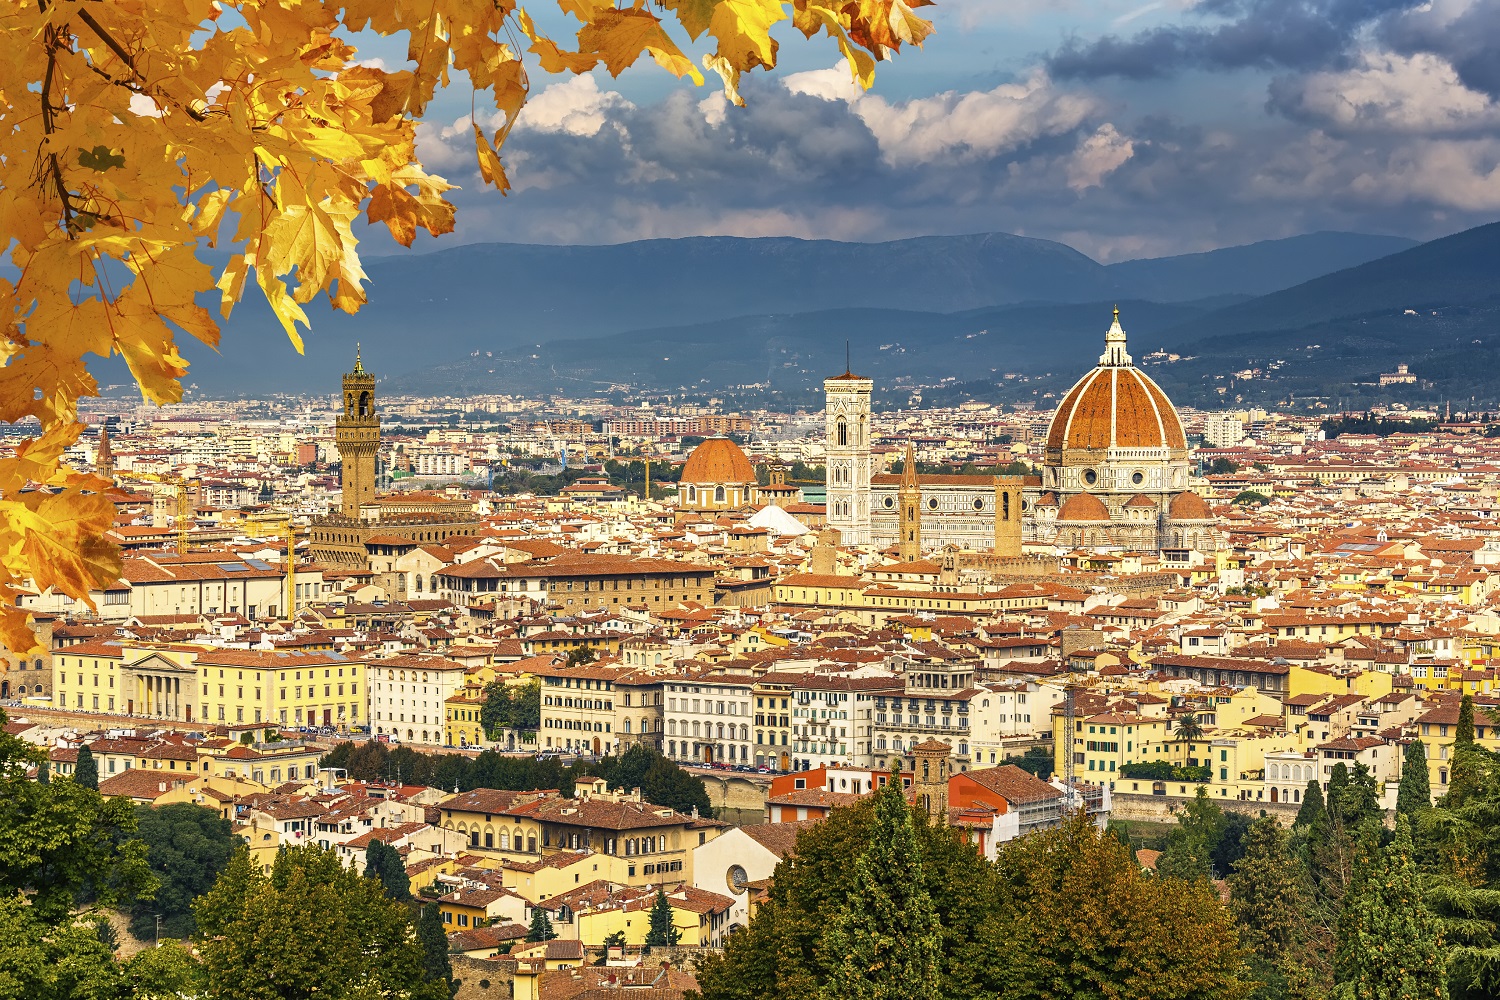 تور ایتالیا با پرواز مستقیم و اقامت 7 روزه در بهترین هتل های کشور ایتالیا